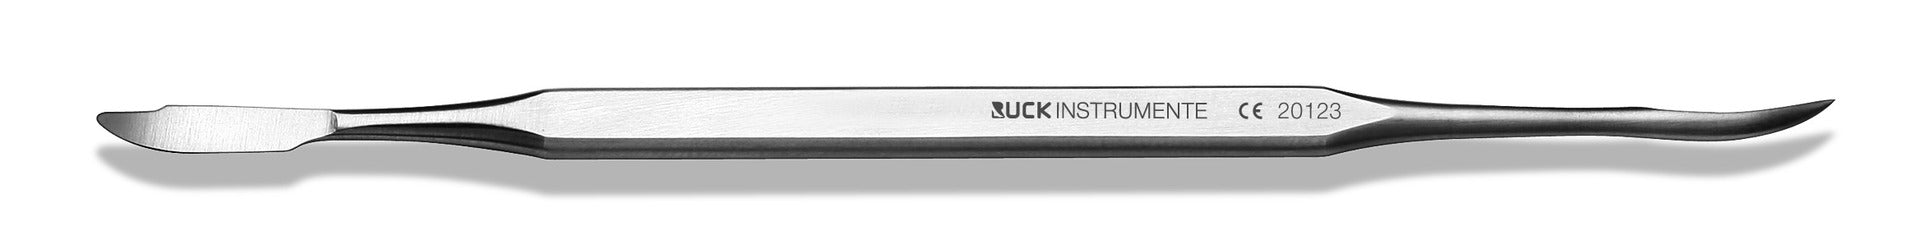 Curette - Longueur : 13 cm - Ruck